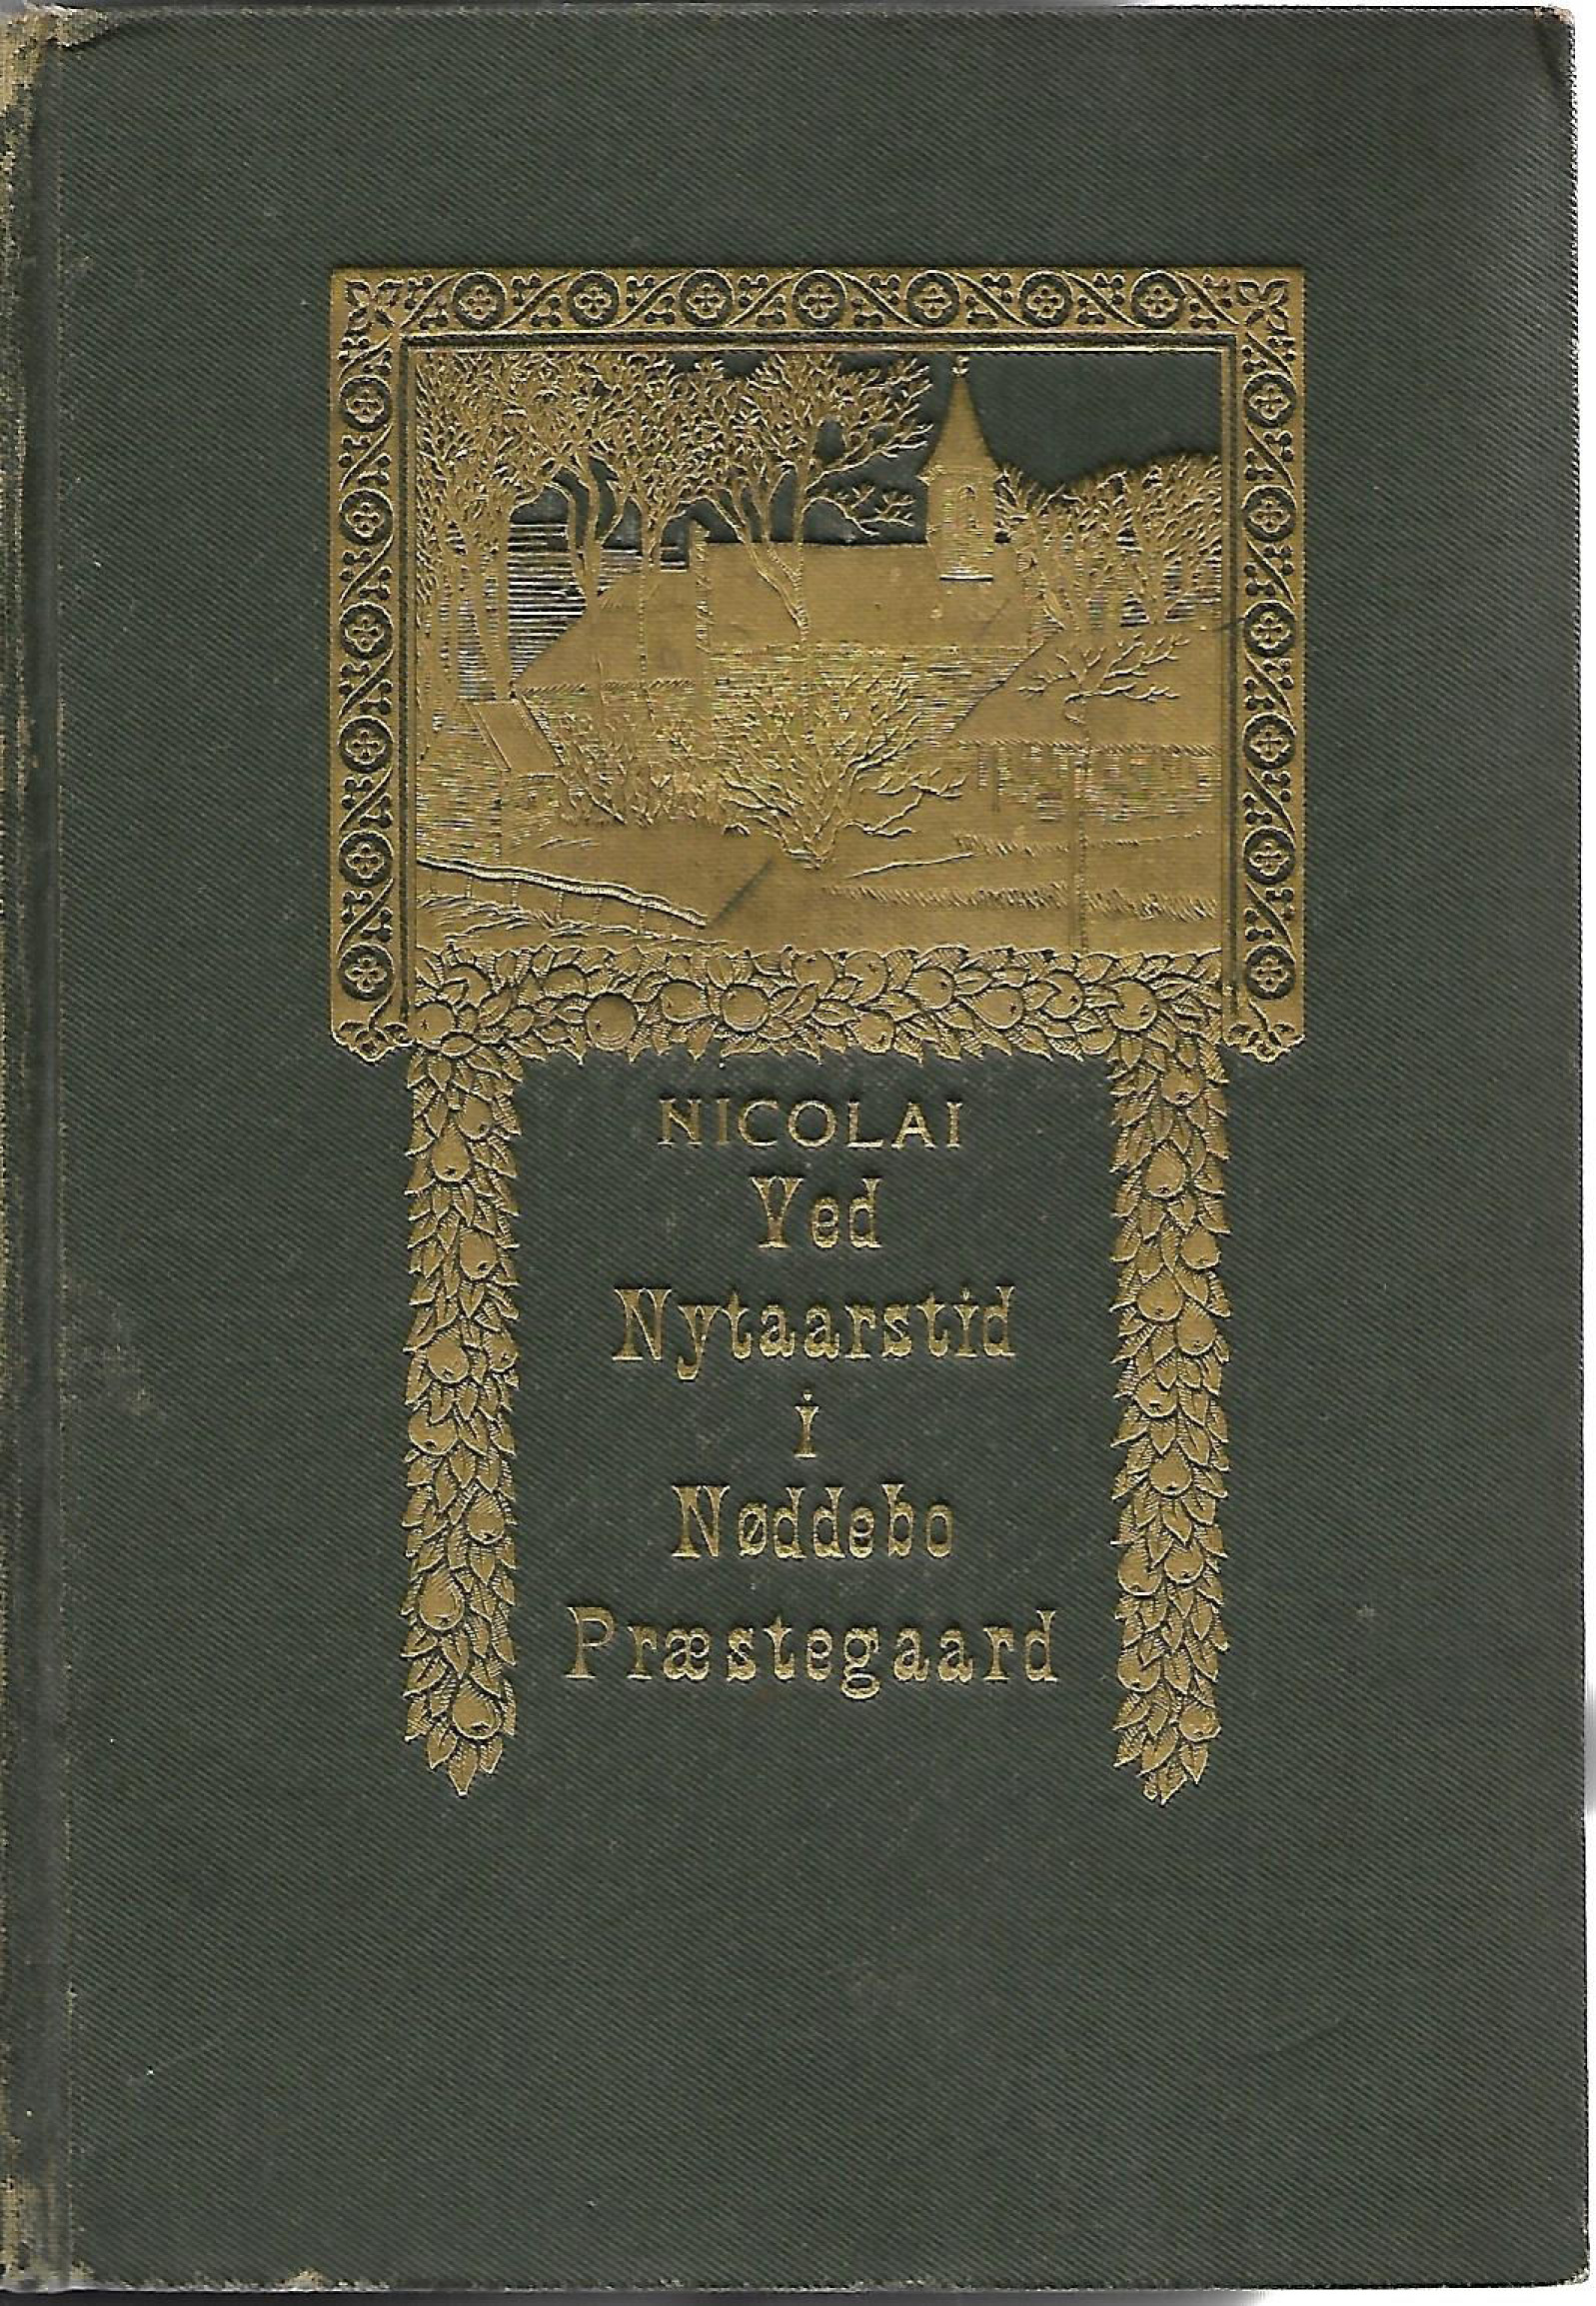 Ved nytaarstid i Nøddebo Præstegaard - Nicolai (Henrik Scharling) 1921